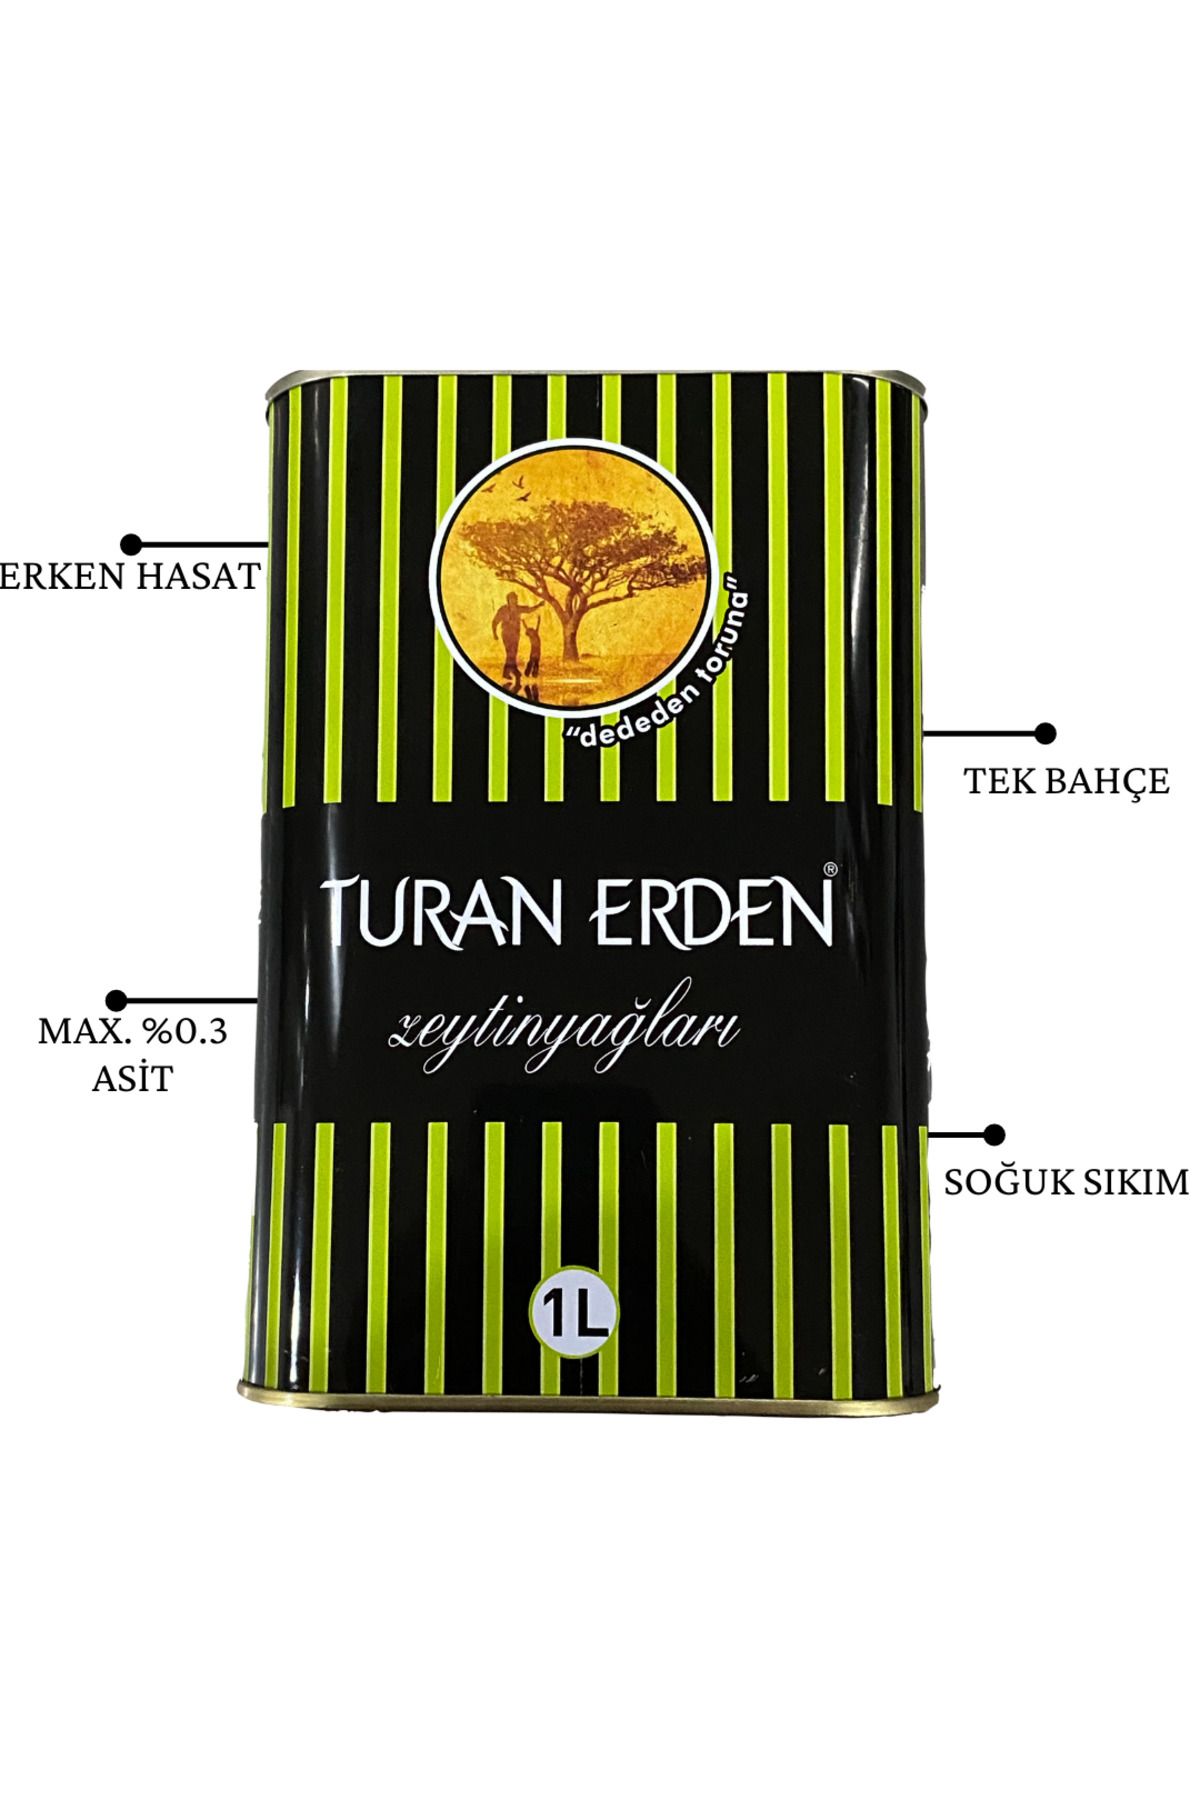 Turan Erden 4x1l Erken Hasat, Soğuk Sıkım, 0,3 Asit, Filtresiz Natürel Sızma Zeytinyağı